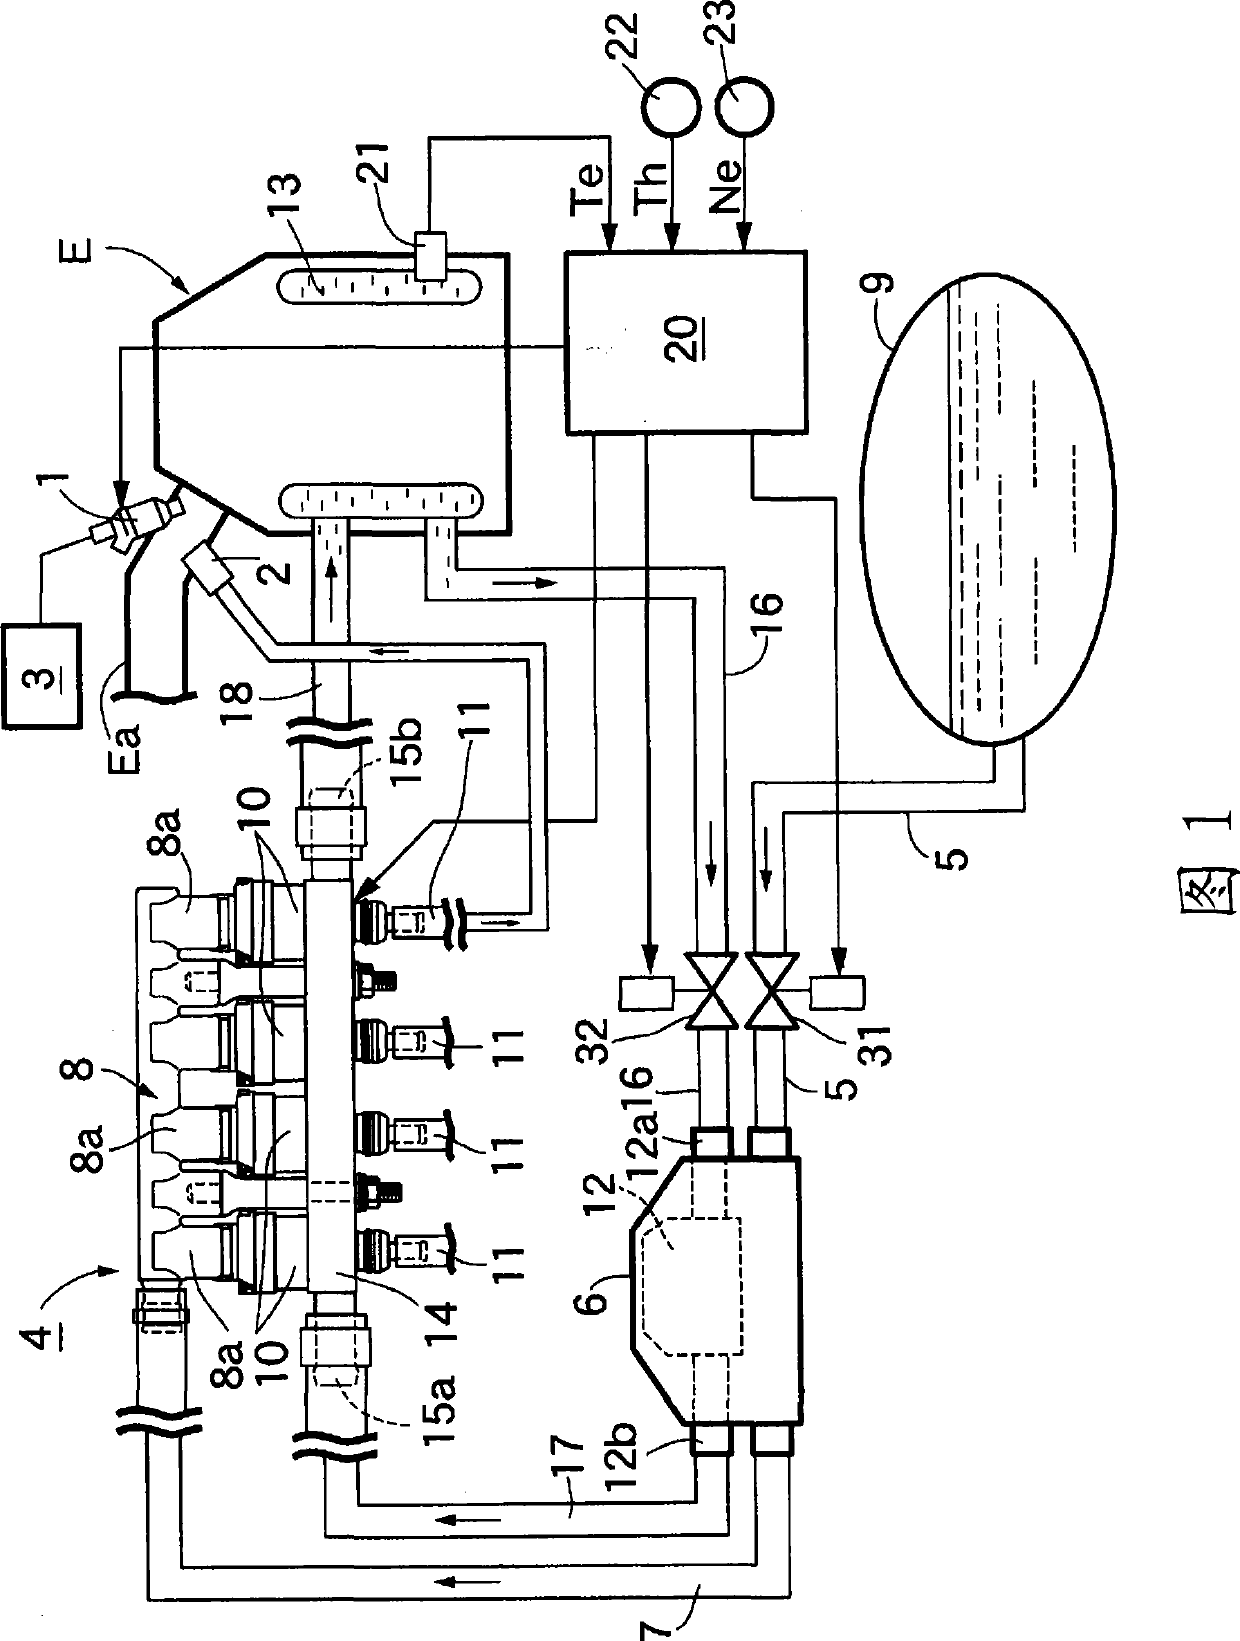 Engine gas fuel supply apparatus